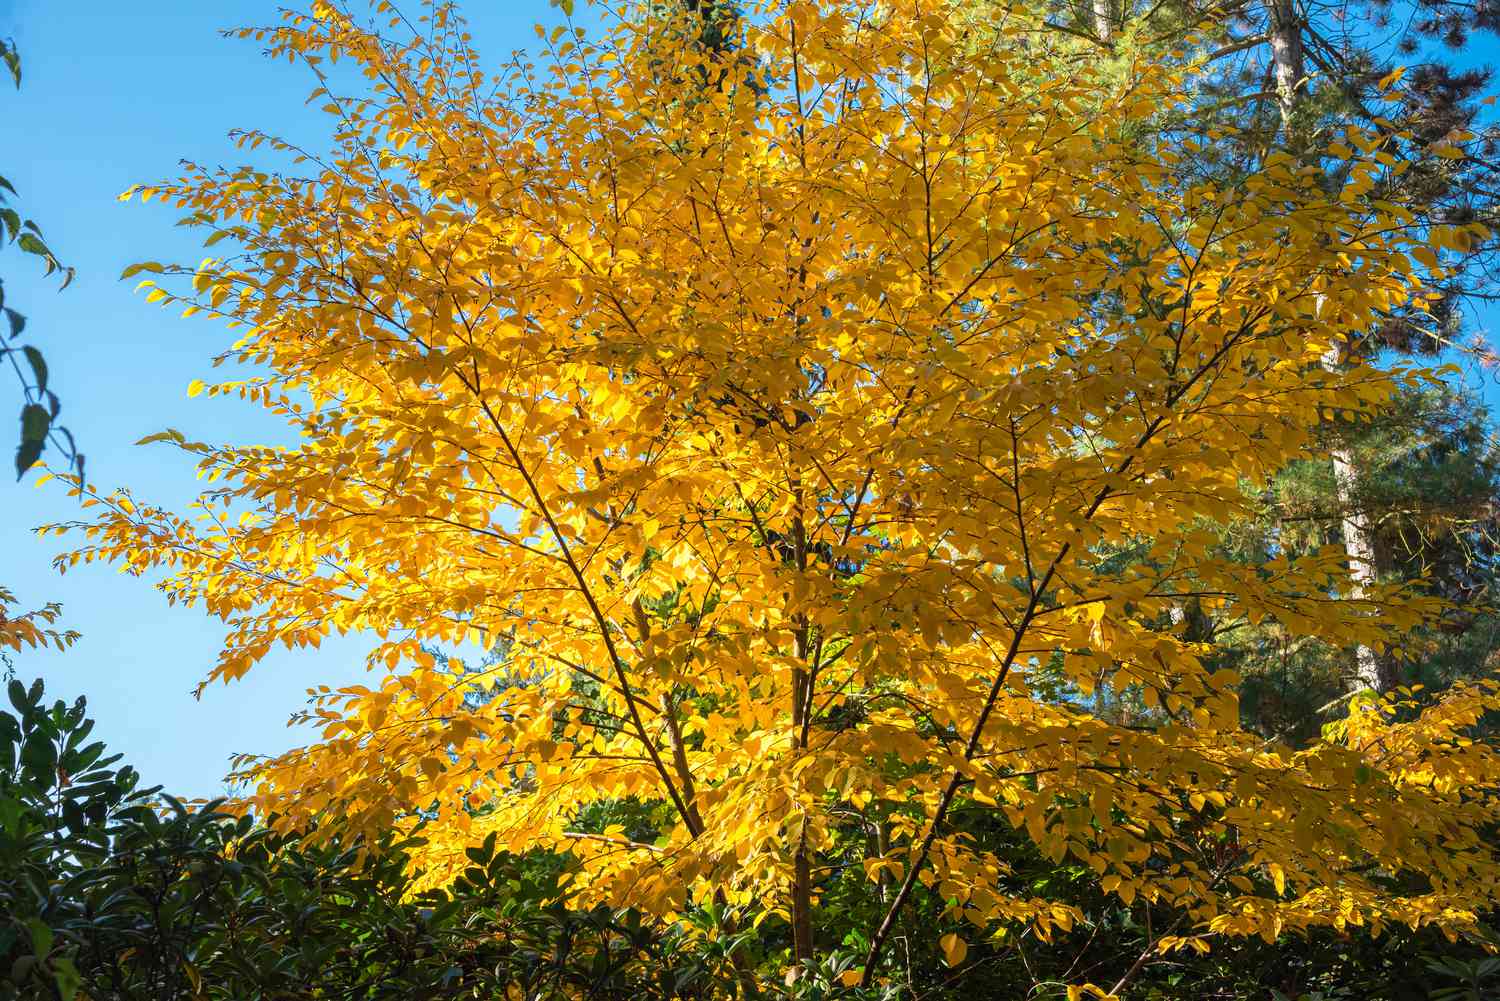 Gelbe Birke mit weit ausladenden Ästen voller gelber Blätter vor blauem Himmel